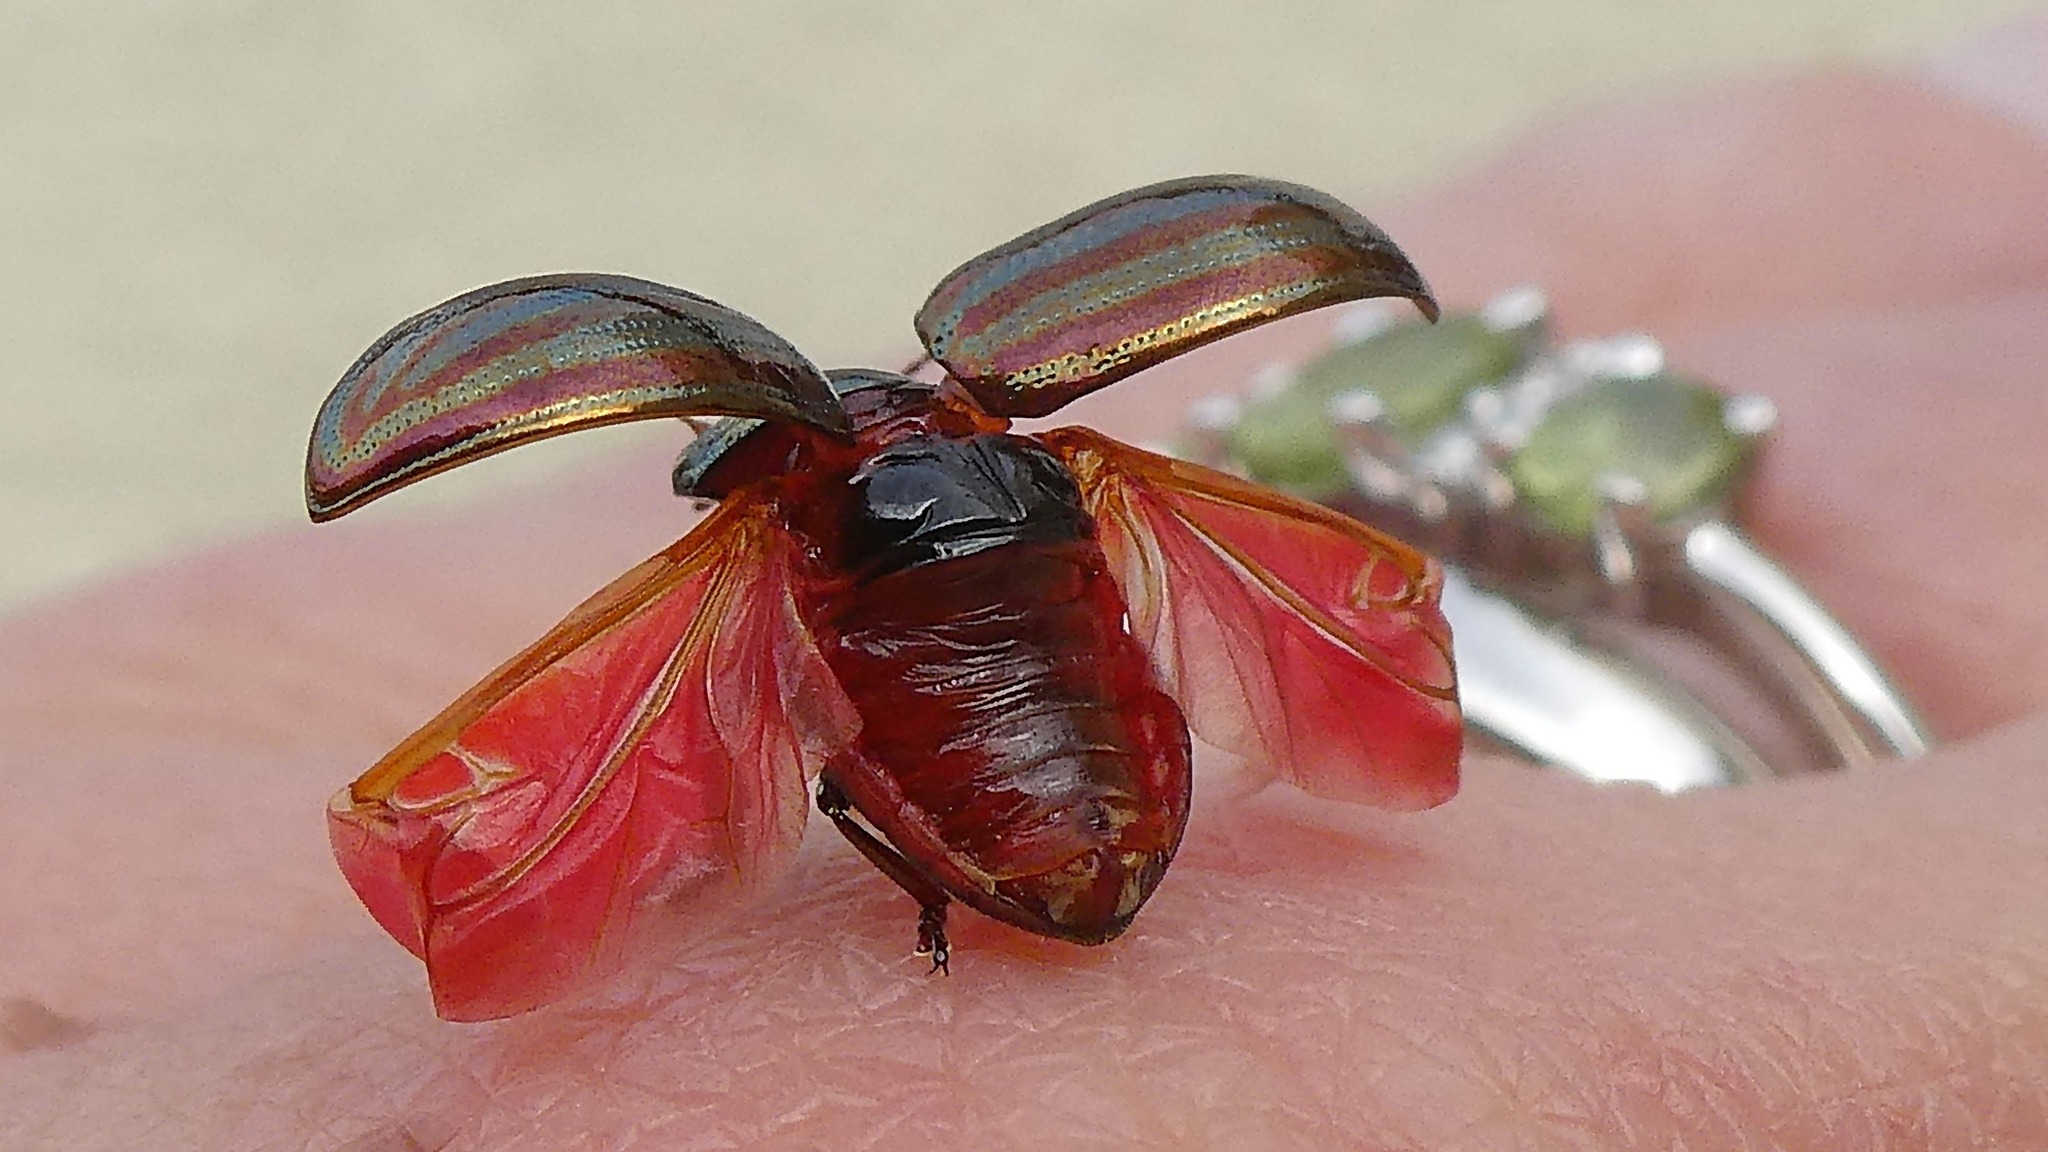 Rosemary beetle by Lynne Bentley